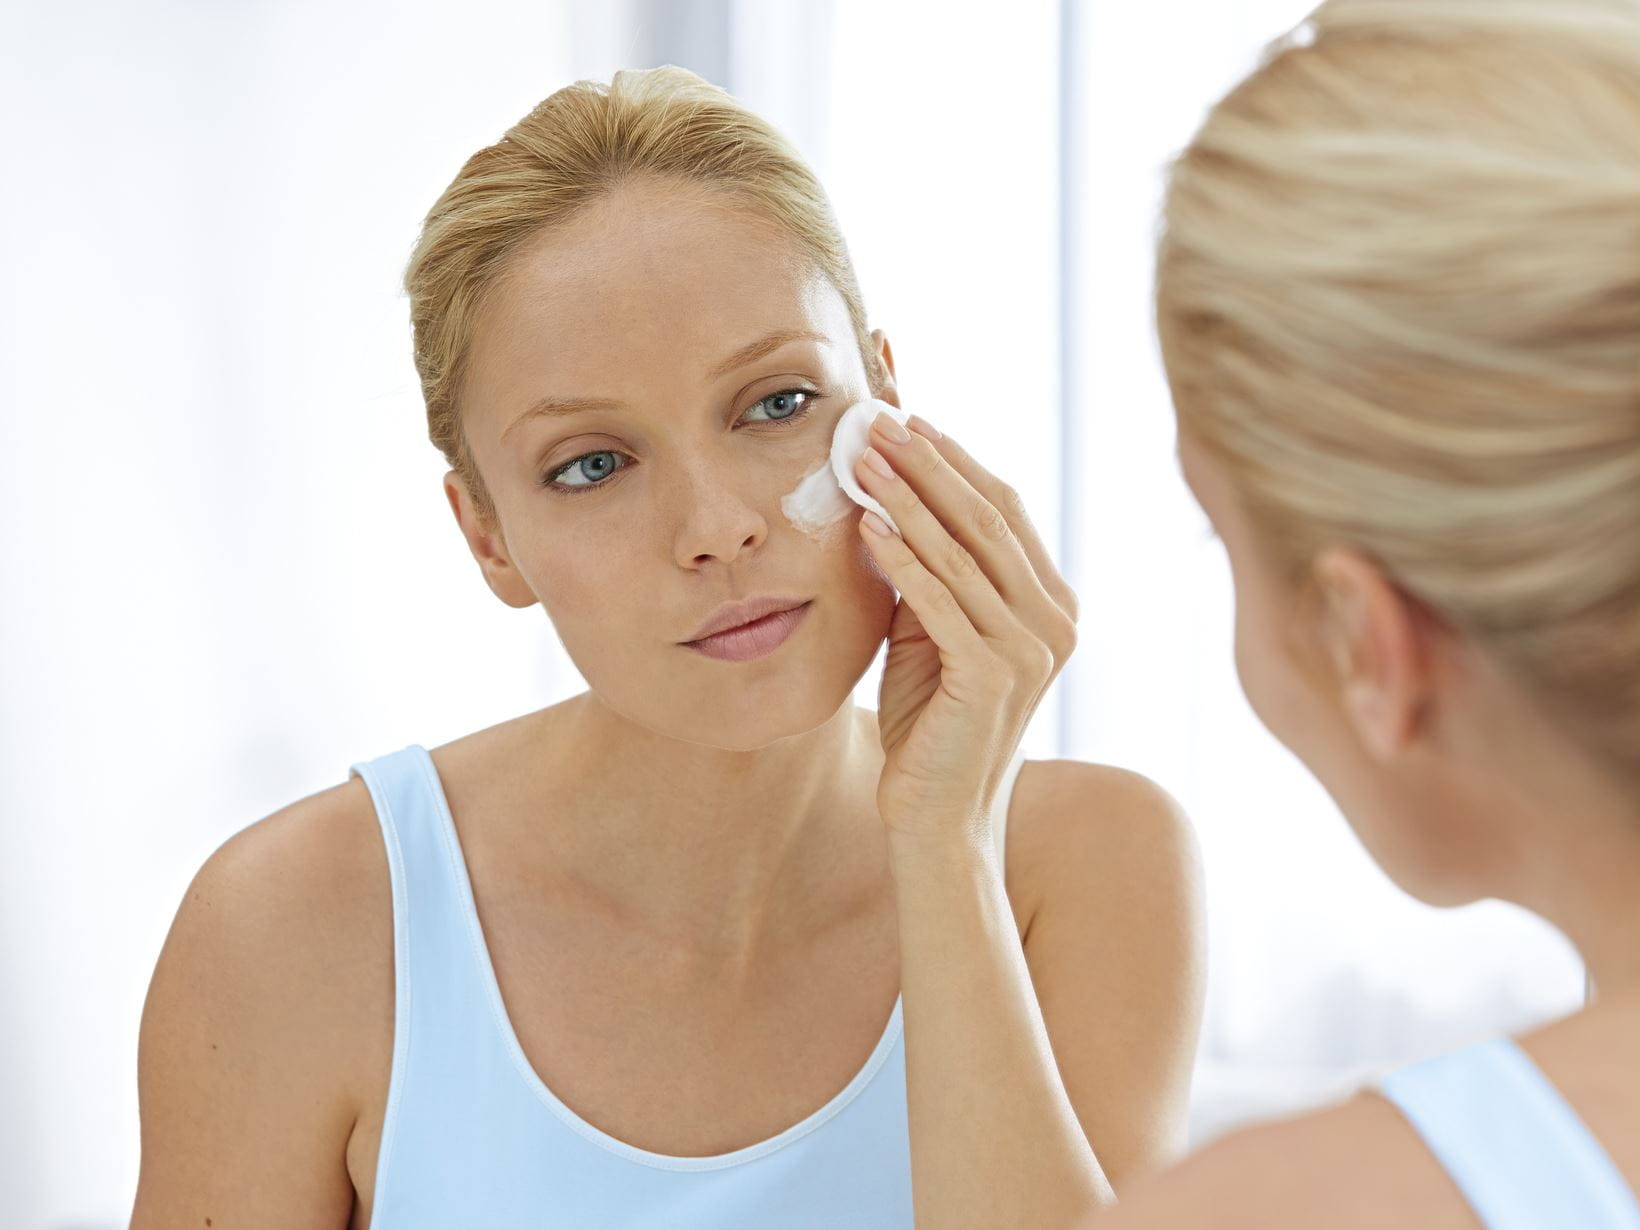 acne treatment advice